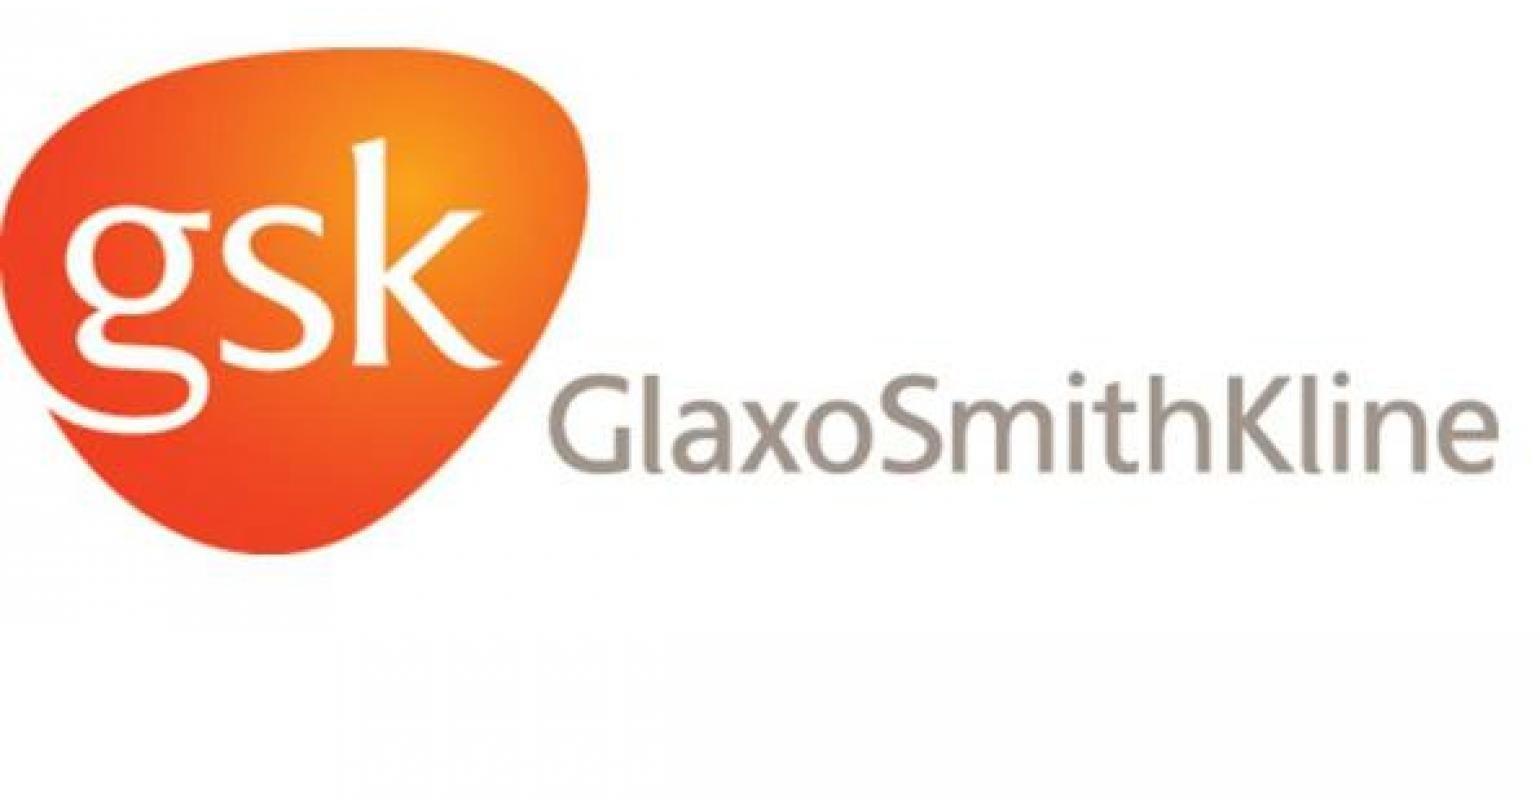 GlaxoSmithKline Logo - GlaxoSmithKline to Pay $3 Billion in Largest Health Care Fraud